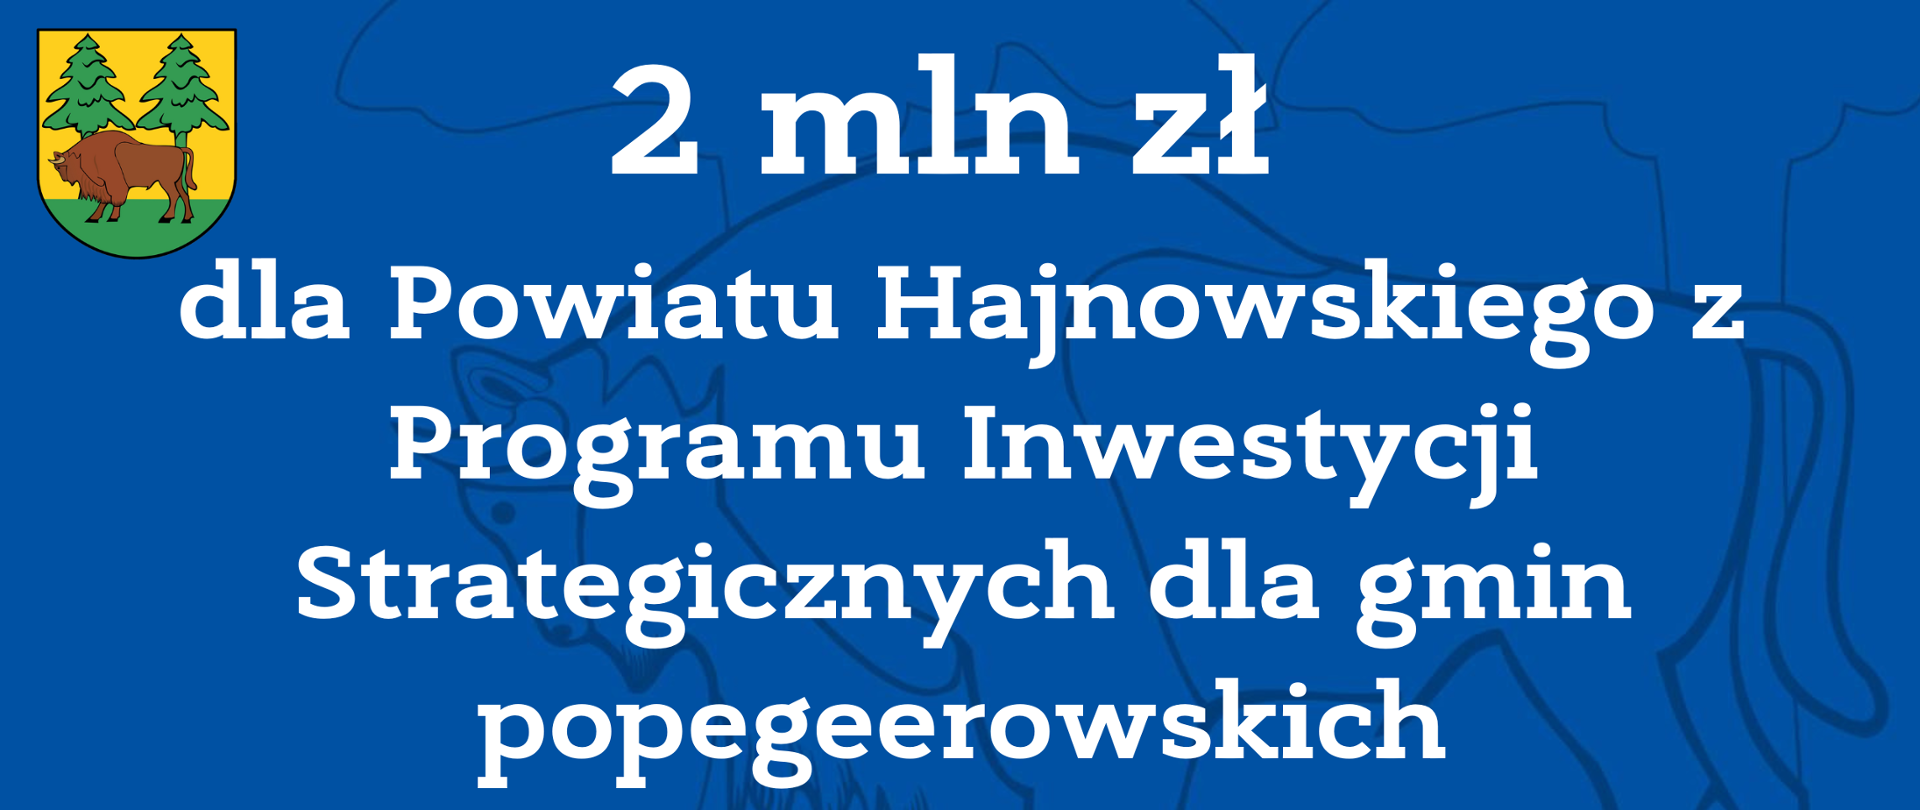 2 mln zł dla Powiatu Hajnowskiego z Programu Inwestycji Strategicznych dla gmin popegeerowskich